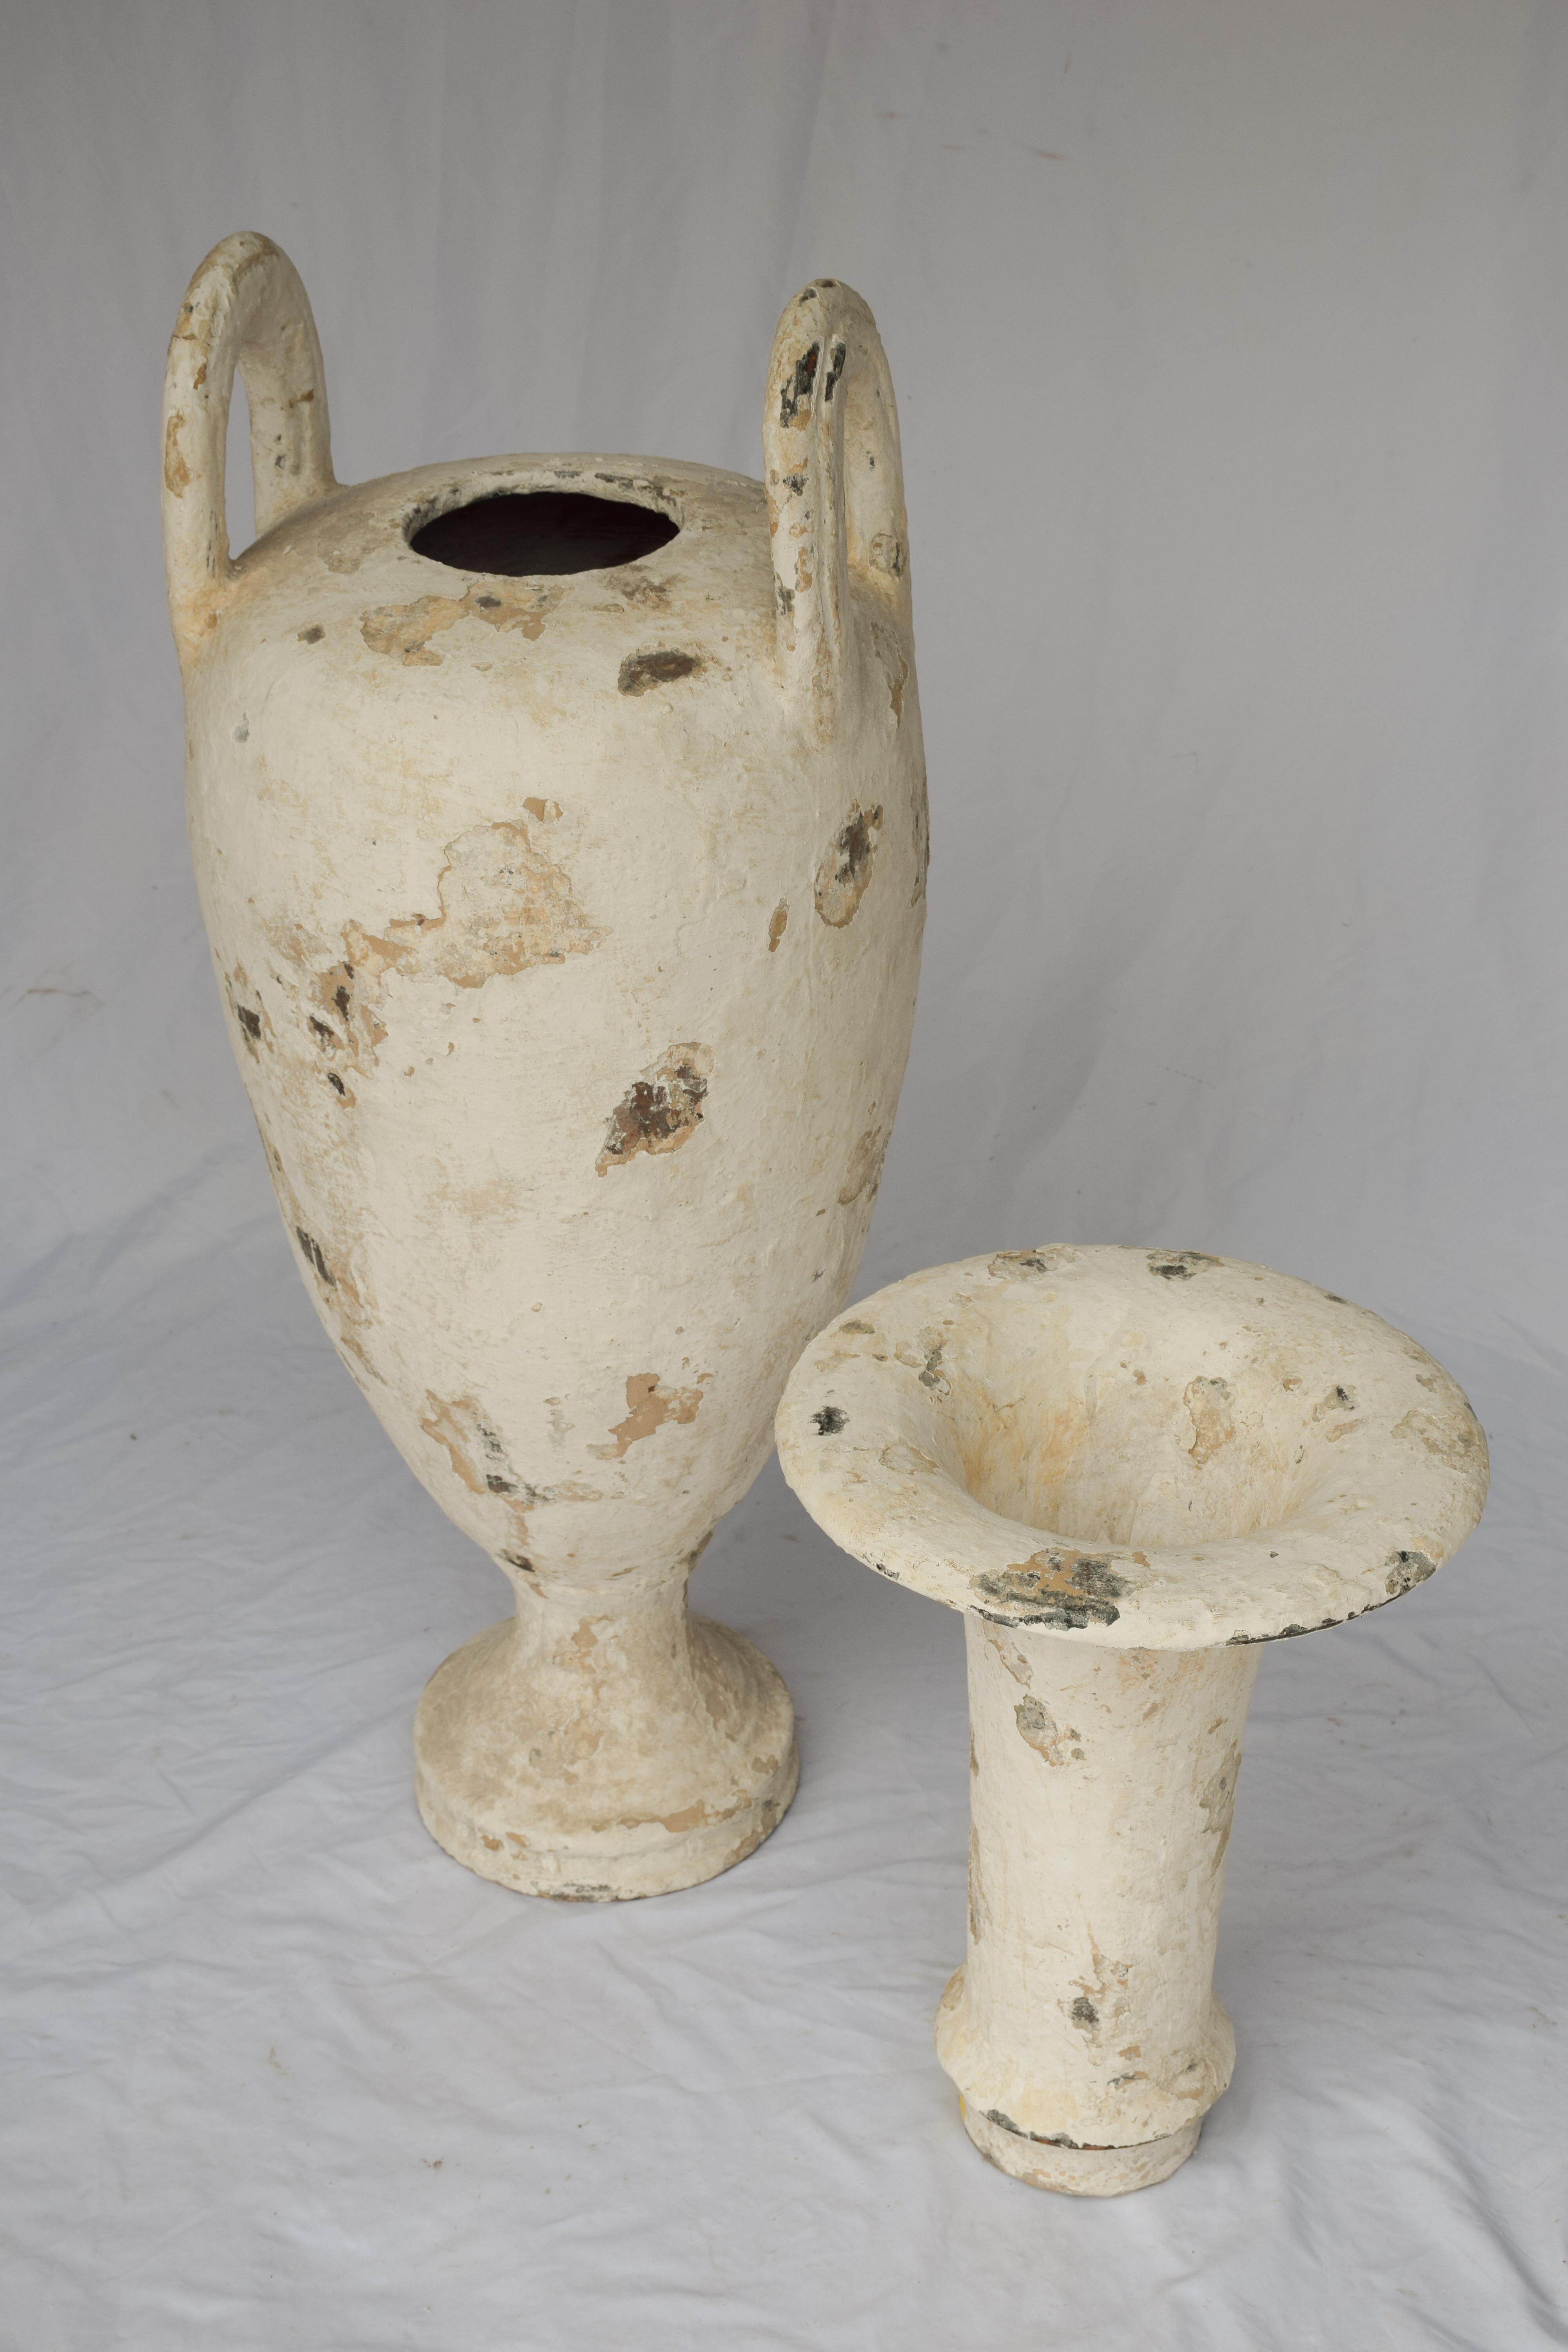 Souvent appelée jarre à huile d'olive, il s'agit en fait d'une amphore, qui est un type de récipient de forme et de dimension spécifiques, apparu au Néolithique, qui s'étendait approximativement de -9000 à -3500. En général, les jarres Amphora